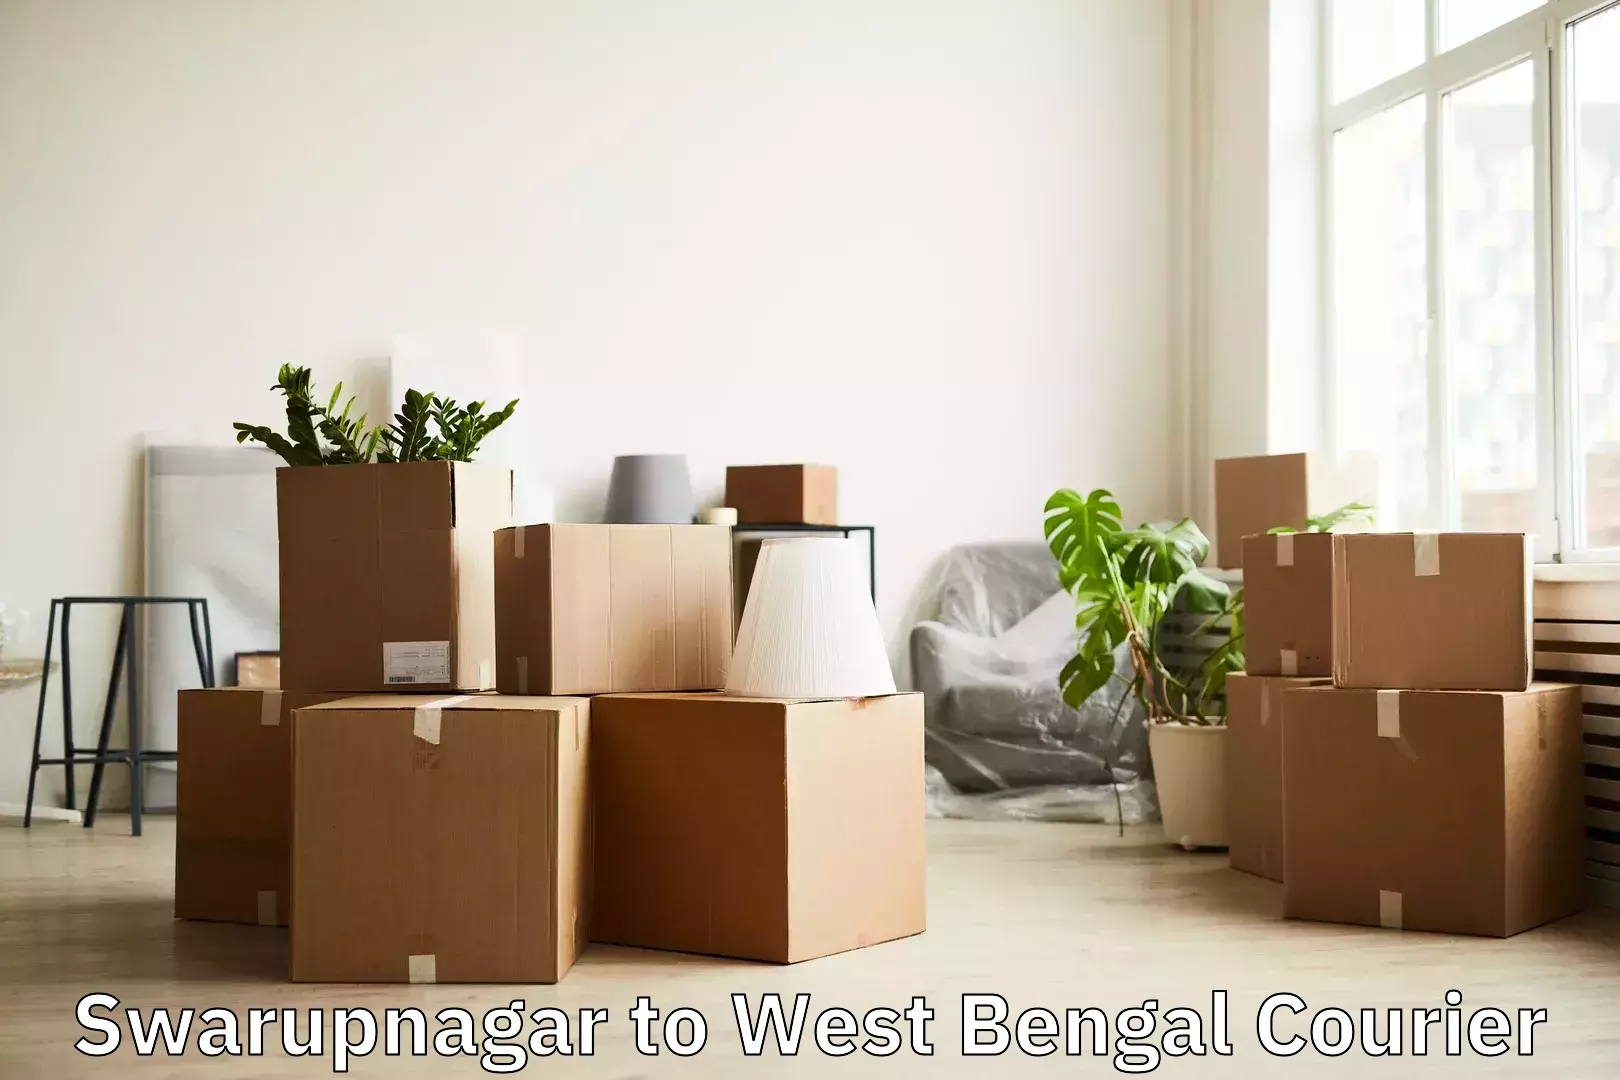 Luggage delivery network Swarupnagar to Mirzapur Bardhaman